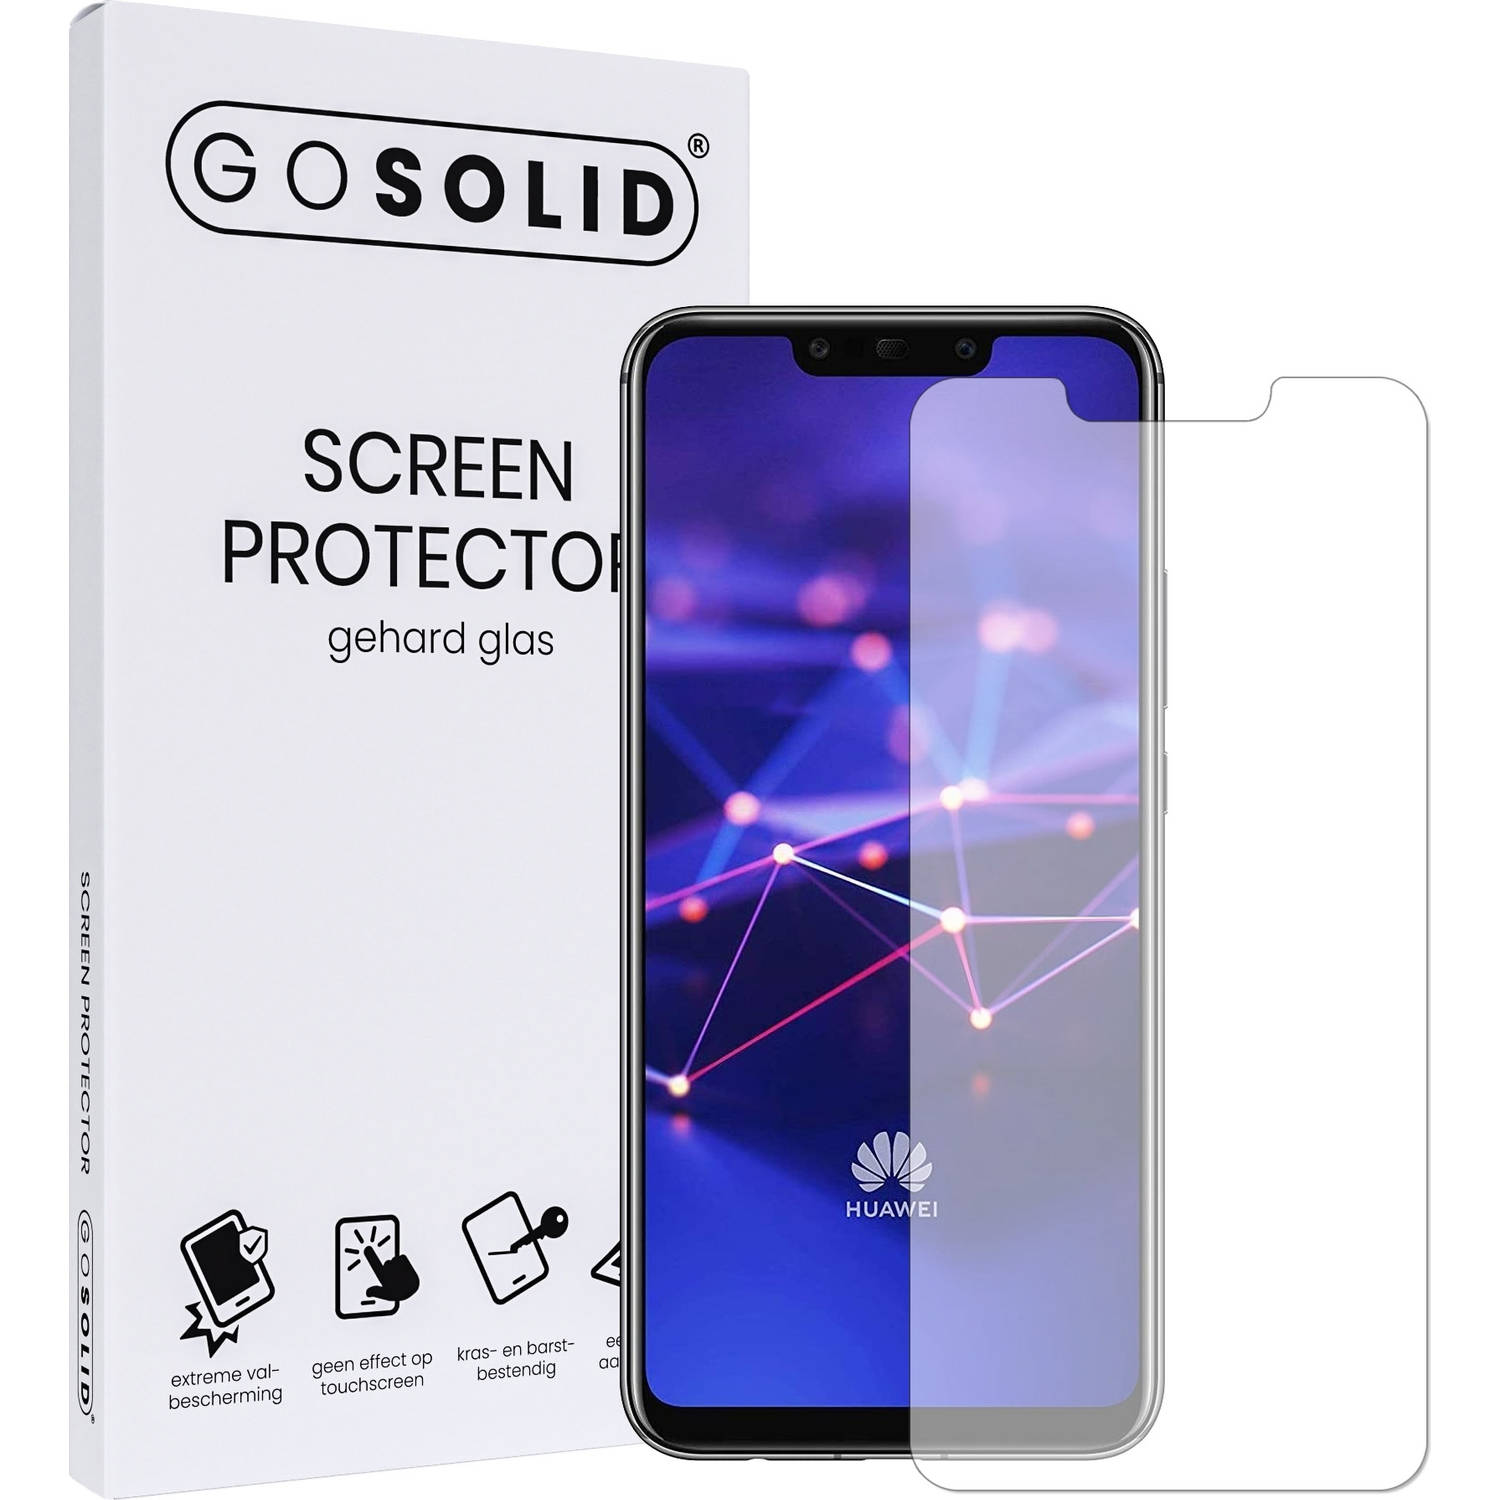 GO SOLID! Screenprotector voor Huawei Mate 20 Pro